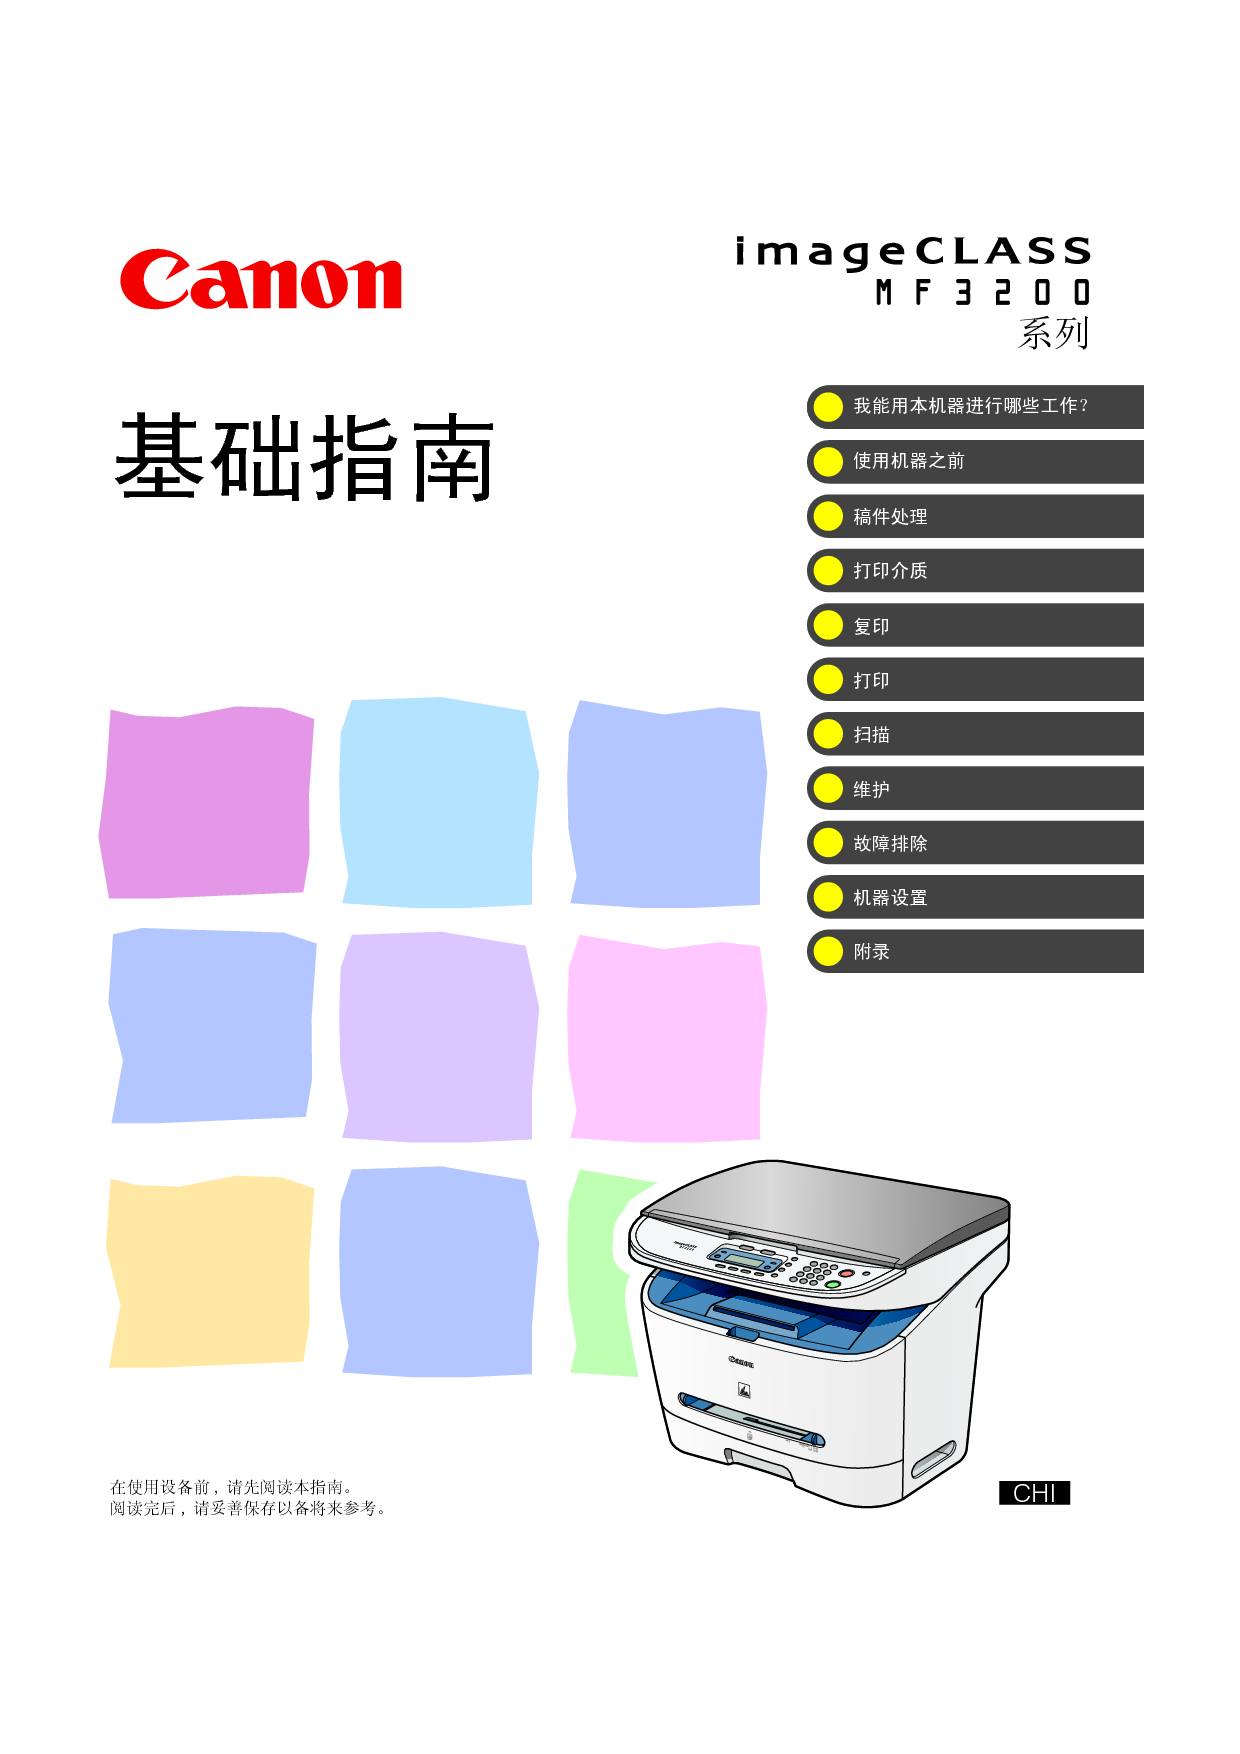 佳能 Canon imageClass MF3200 基础使用指南 封面